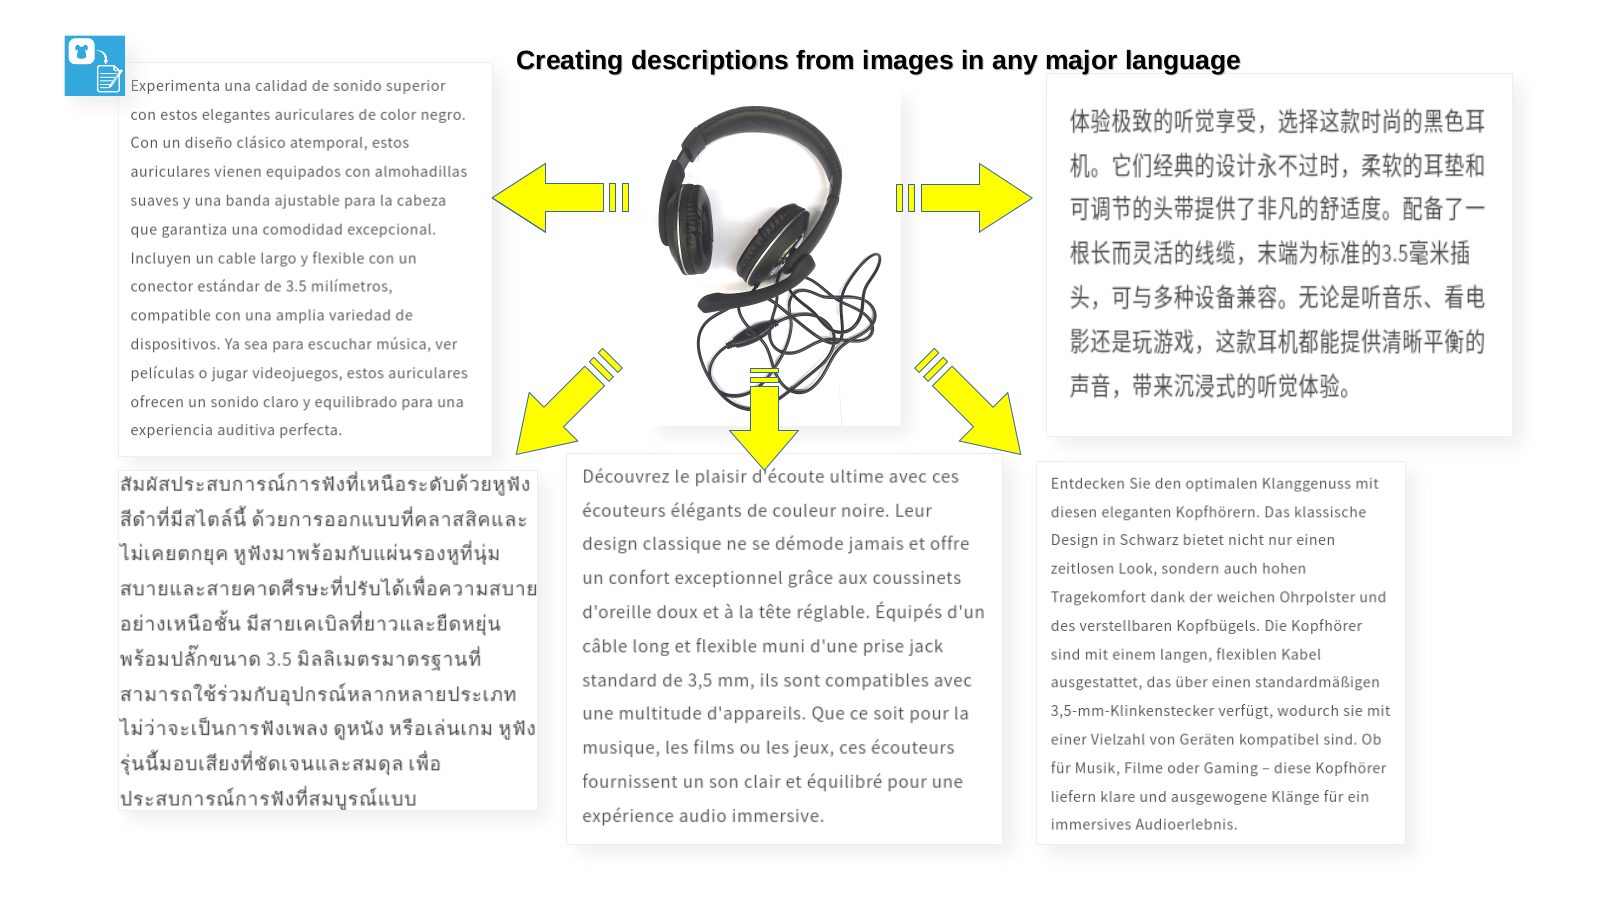 Productafbeeldingen en gegenereerde inhoud, voorbeeld in meerdere talen